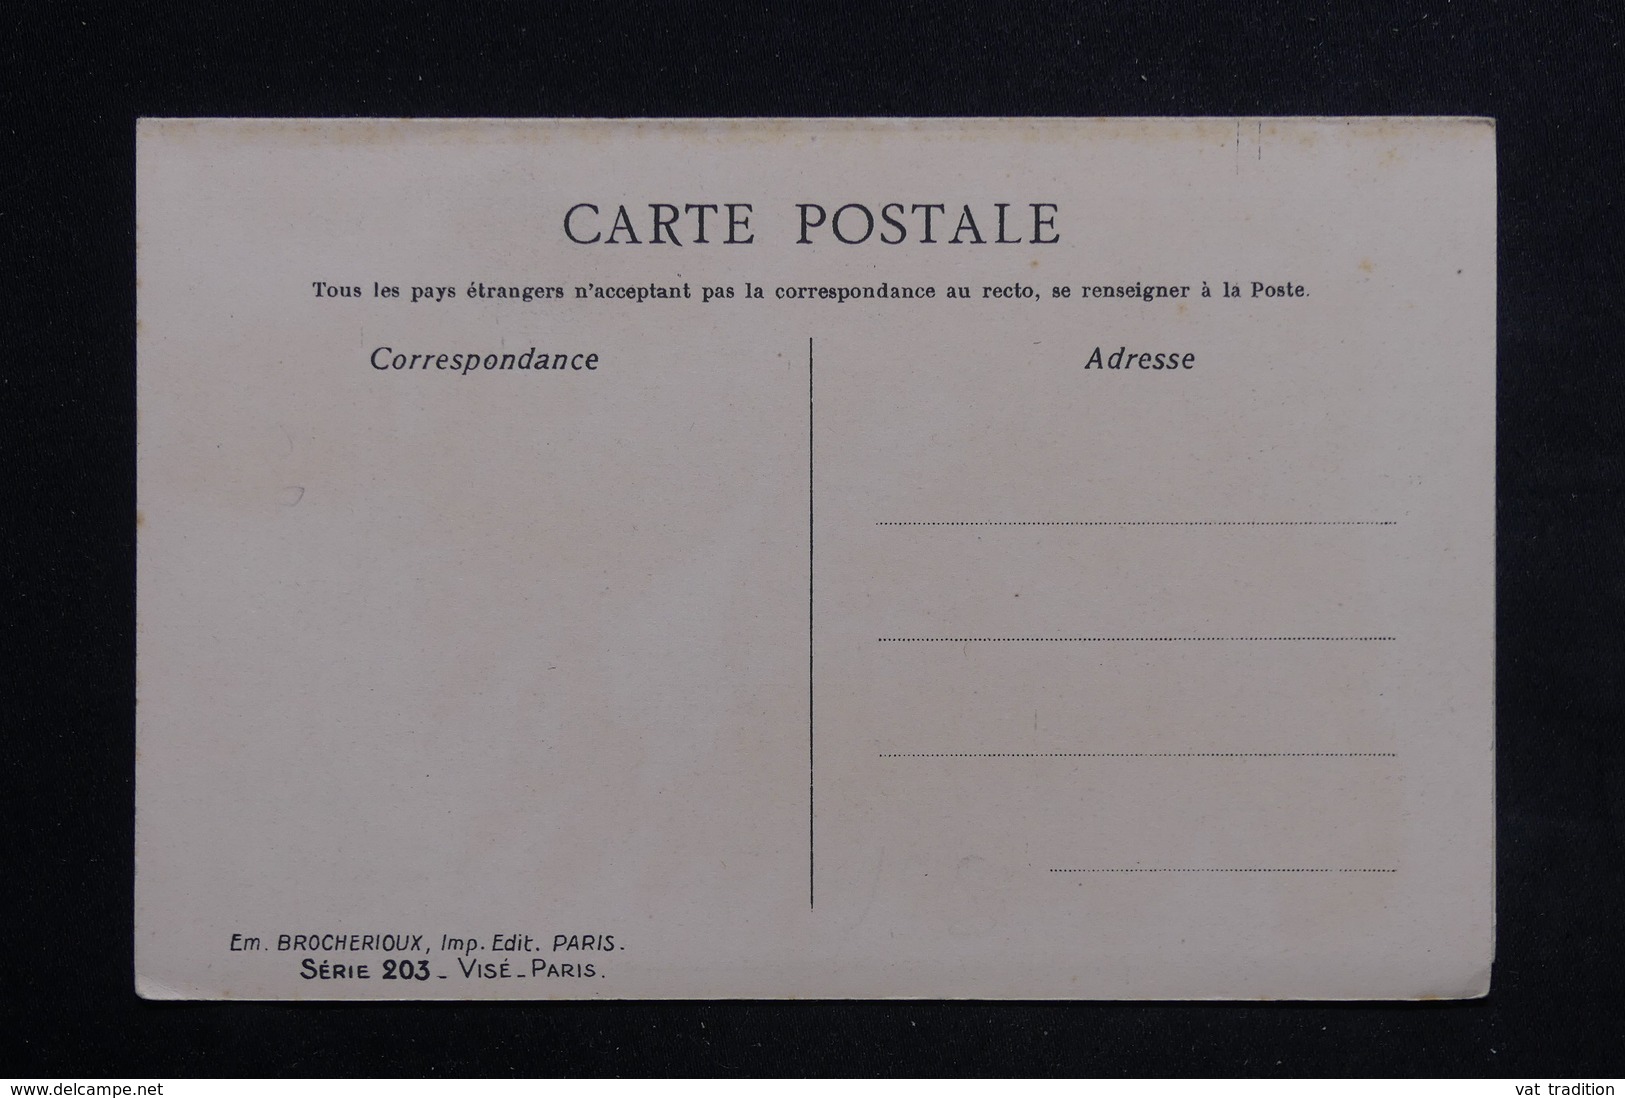 MILITARIA - Carte Postale - Carte Postale Double - Chansons Poiluse - L 22419 - Humoristiques